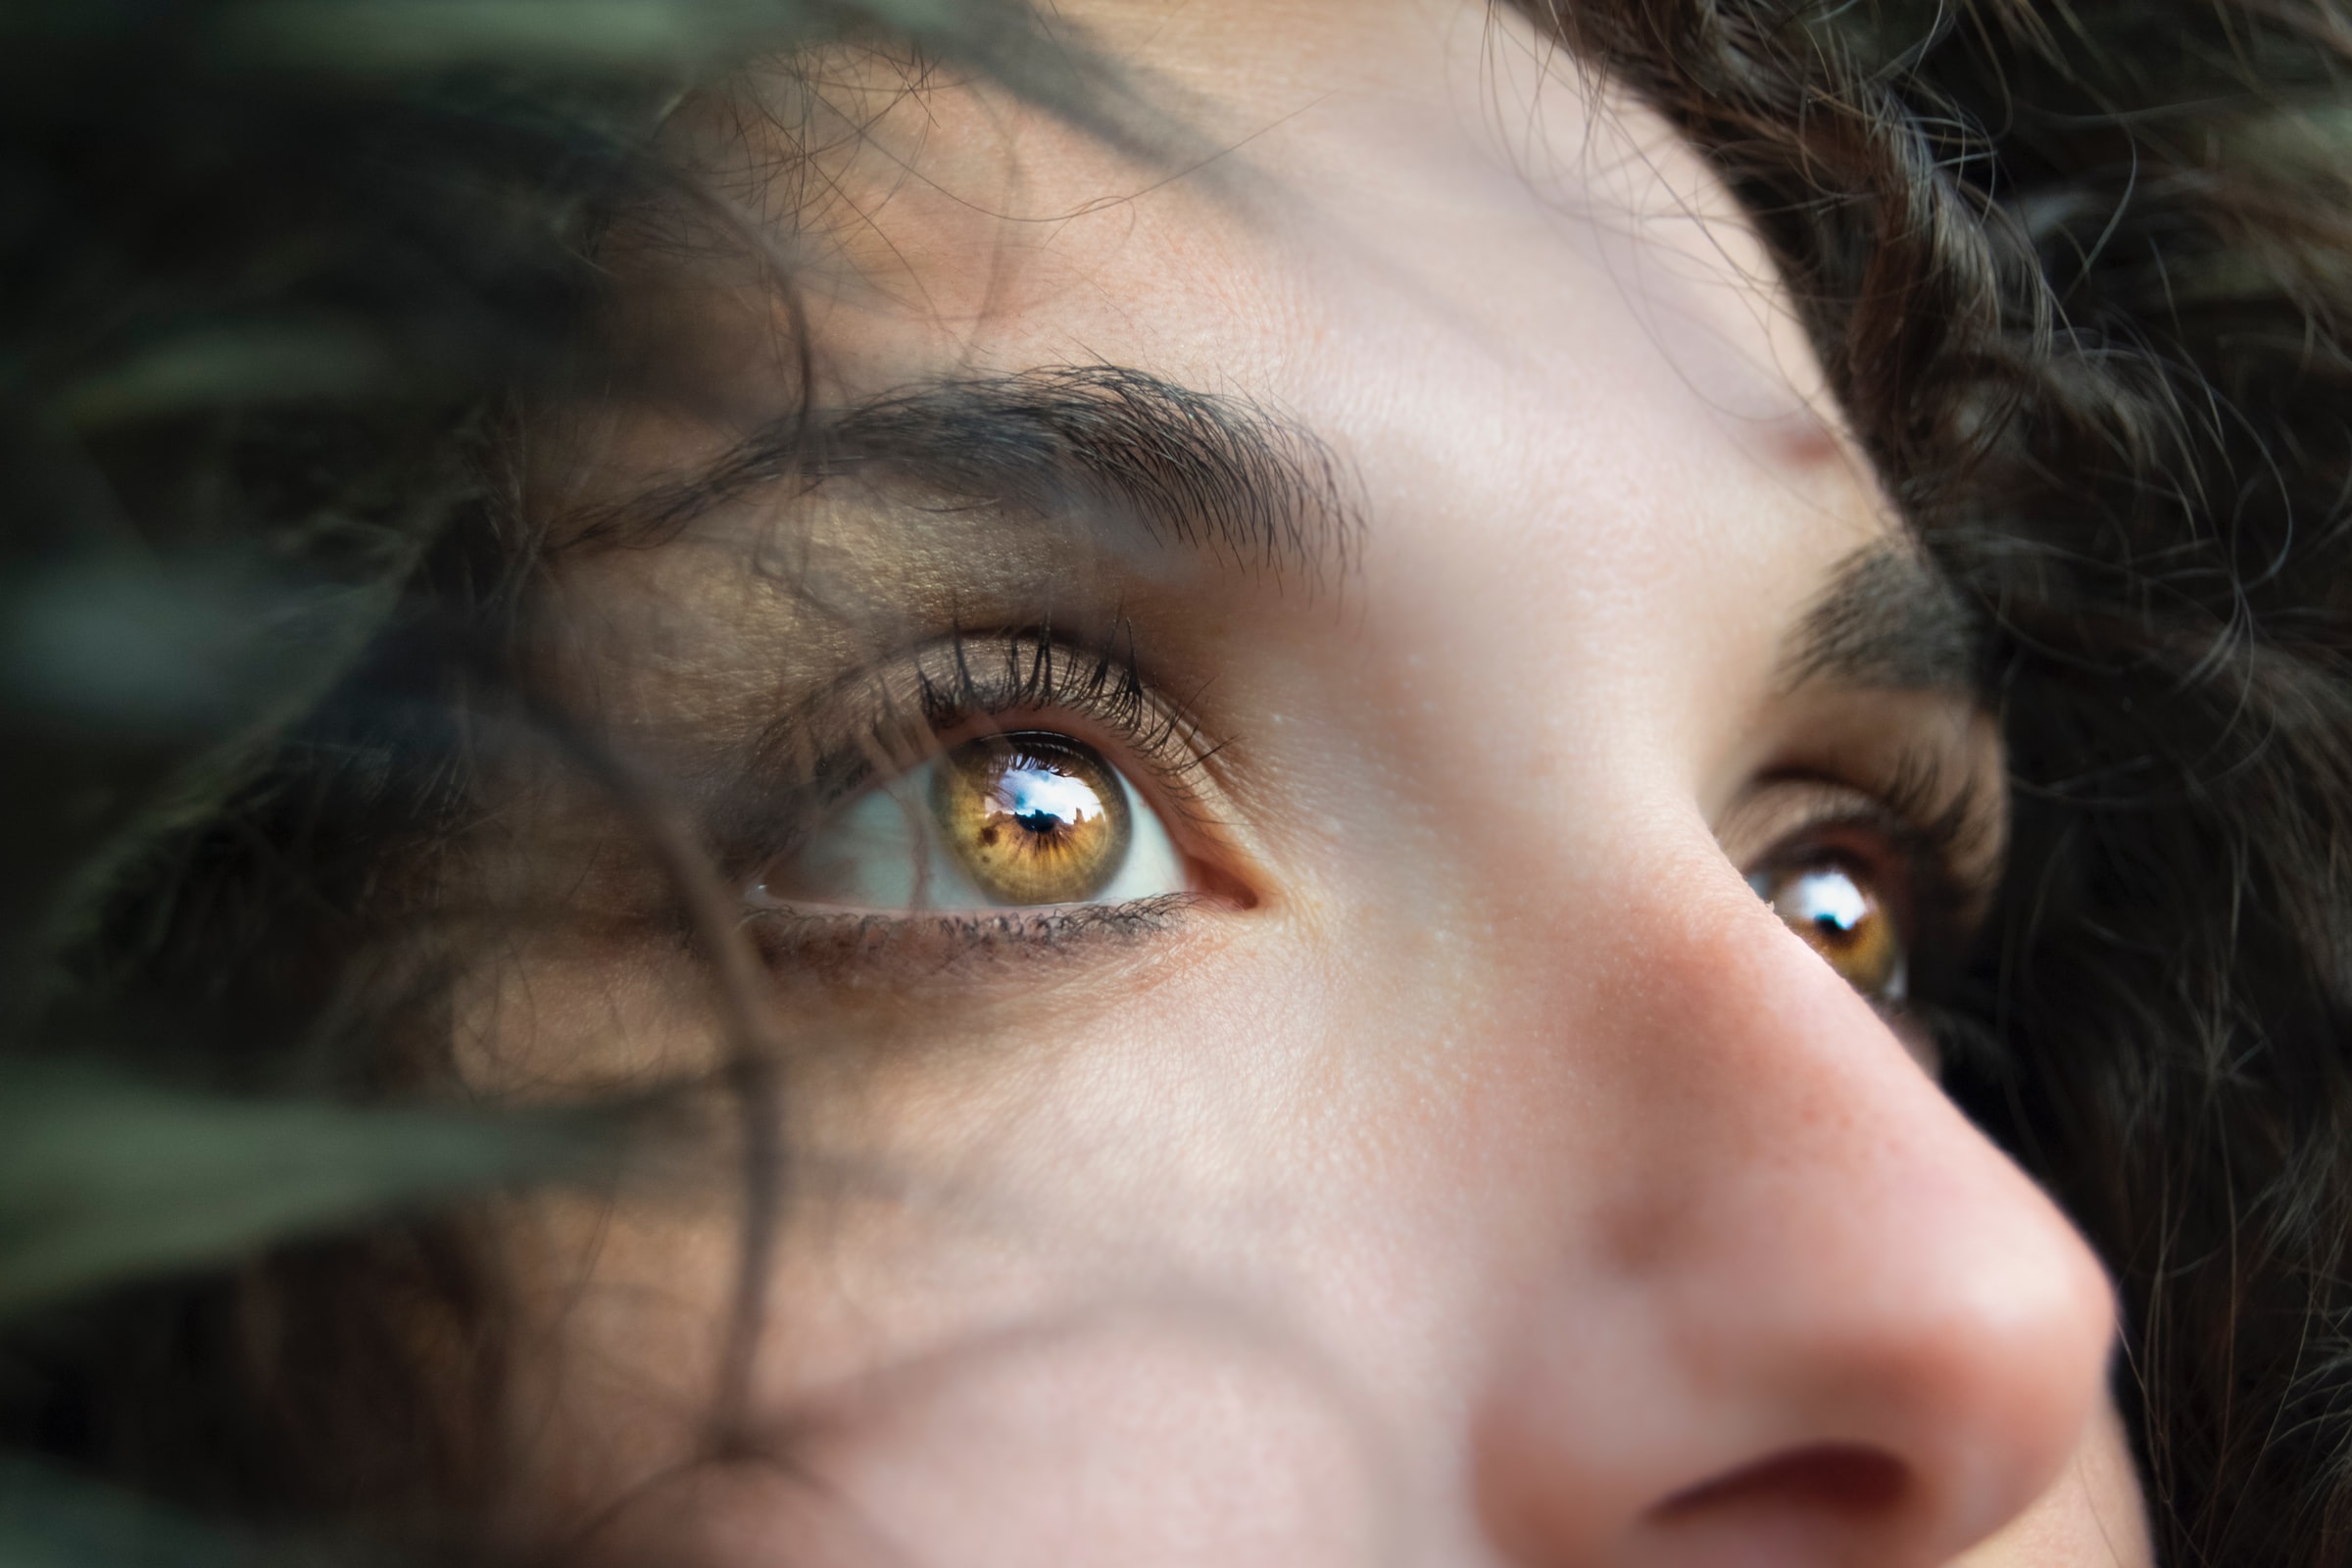 L'oeil, les yeux : symbolique et signification émotionnelle